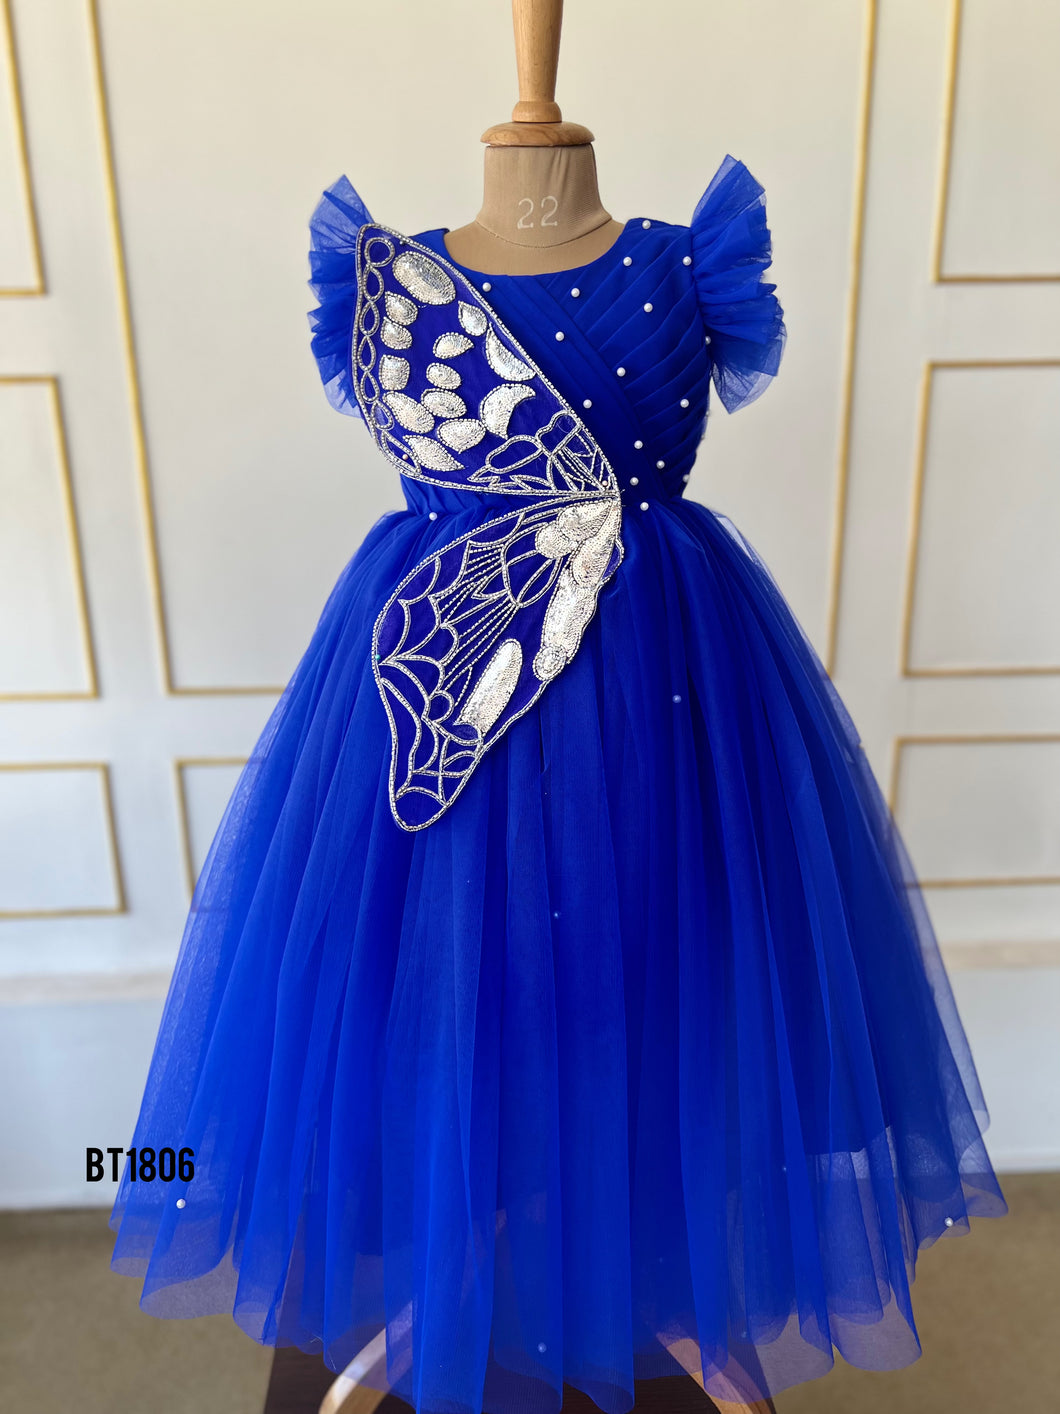 BT1806 Sapphire Flutter: Enchanting Blue Butterfly Princess Gown